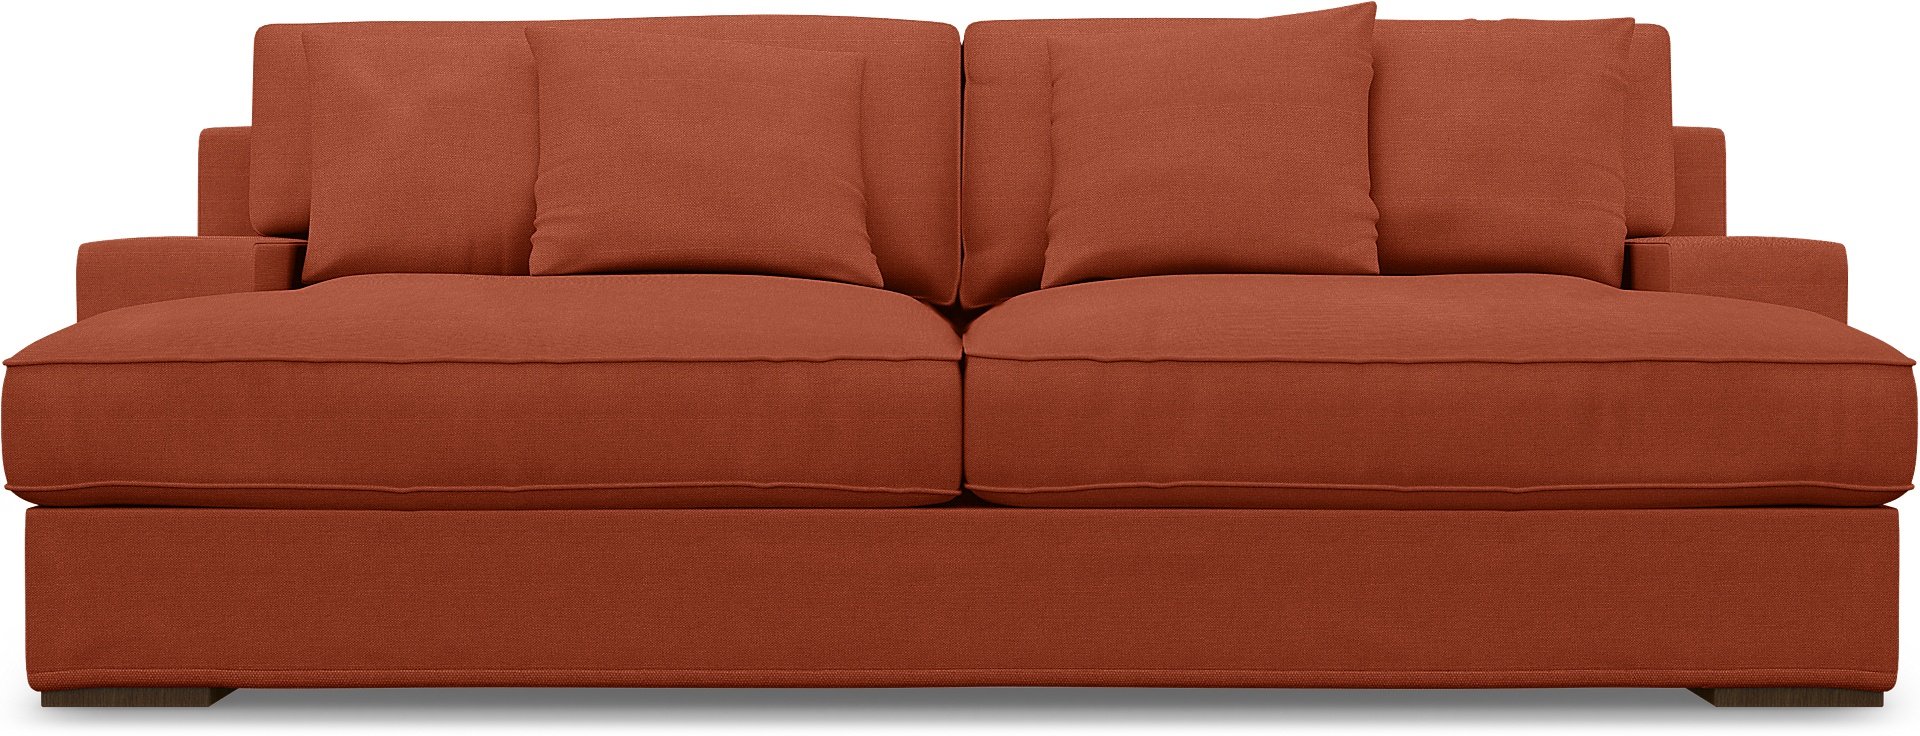 IKEA - Goteborg 3 Seater Sofa Cover, Burnt Orange, Linen - Bemz